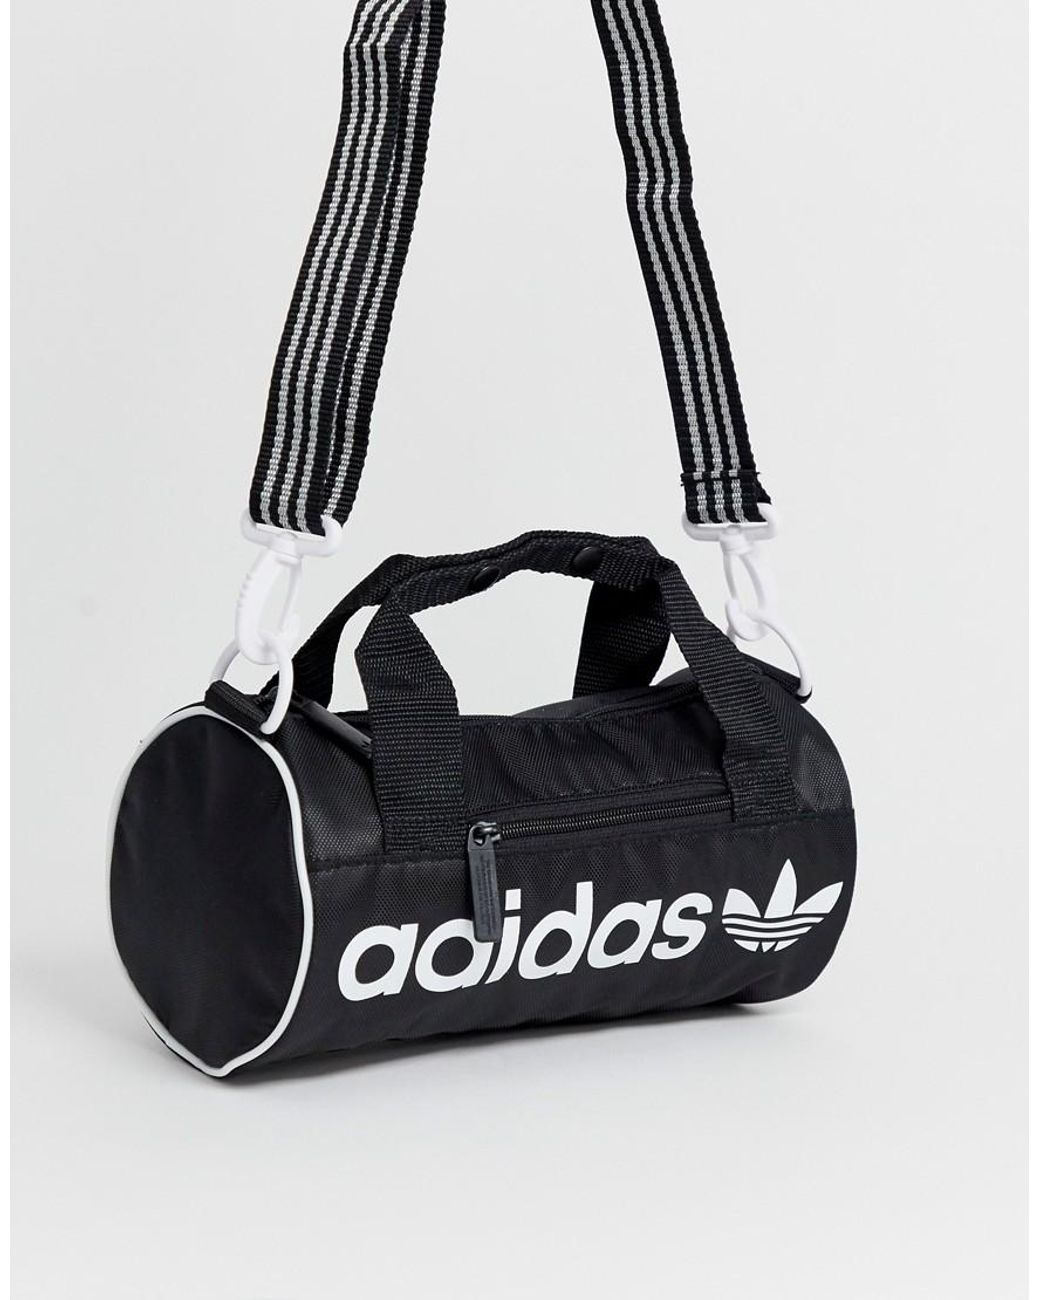 adidas Training premium duffle bag in black | ASOS